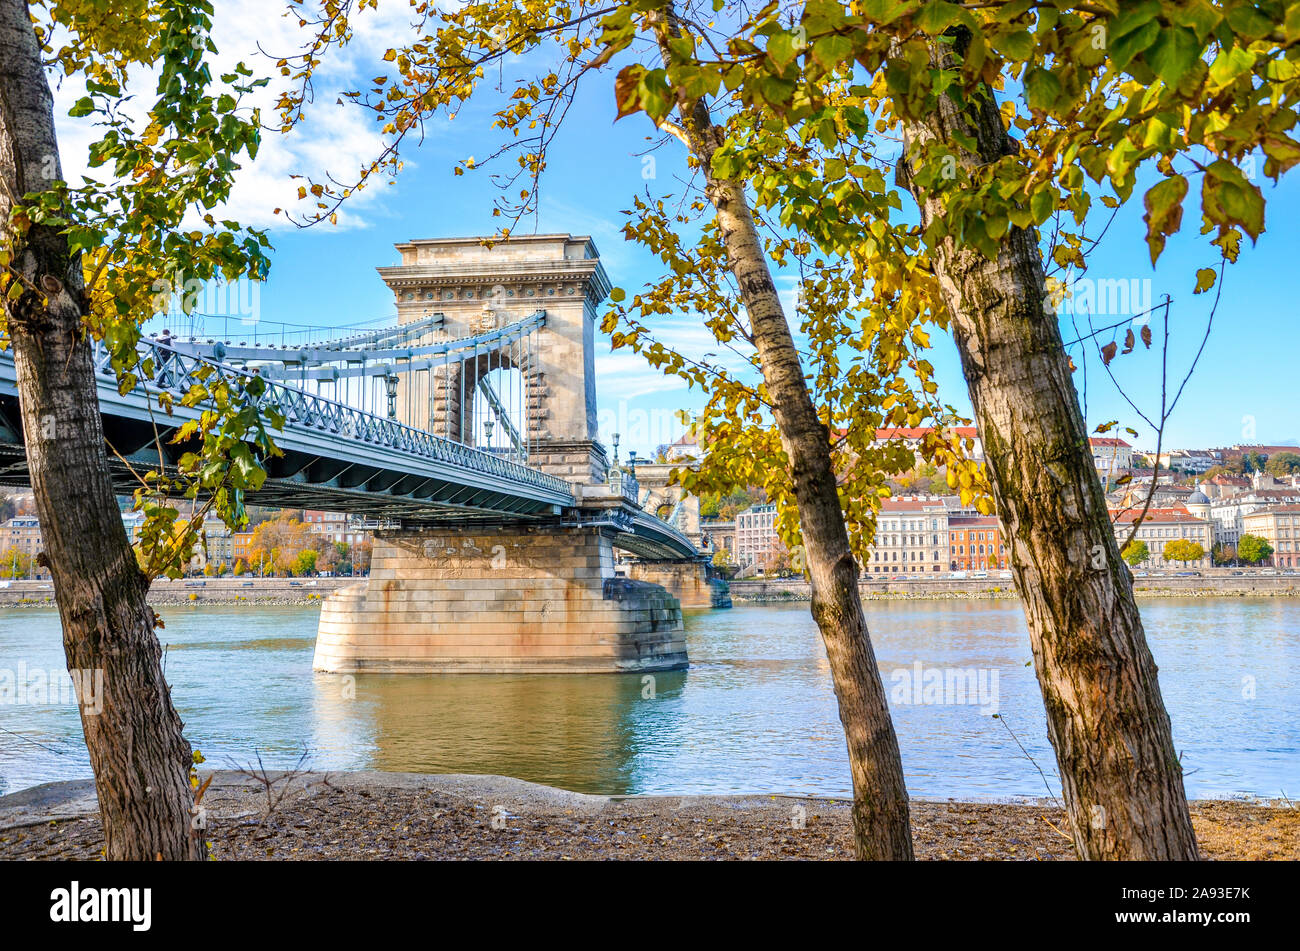 Szechenyi étonnant pont des Chaînes sur le Danube à Budapest, Hongrie prises avec les arbres d'automne par la rivière. Pont des chaînes reliant Buda et Pest. Monument touristique. La capitale hongroise. Banque D'Images